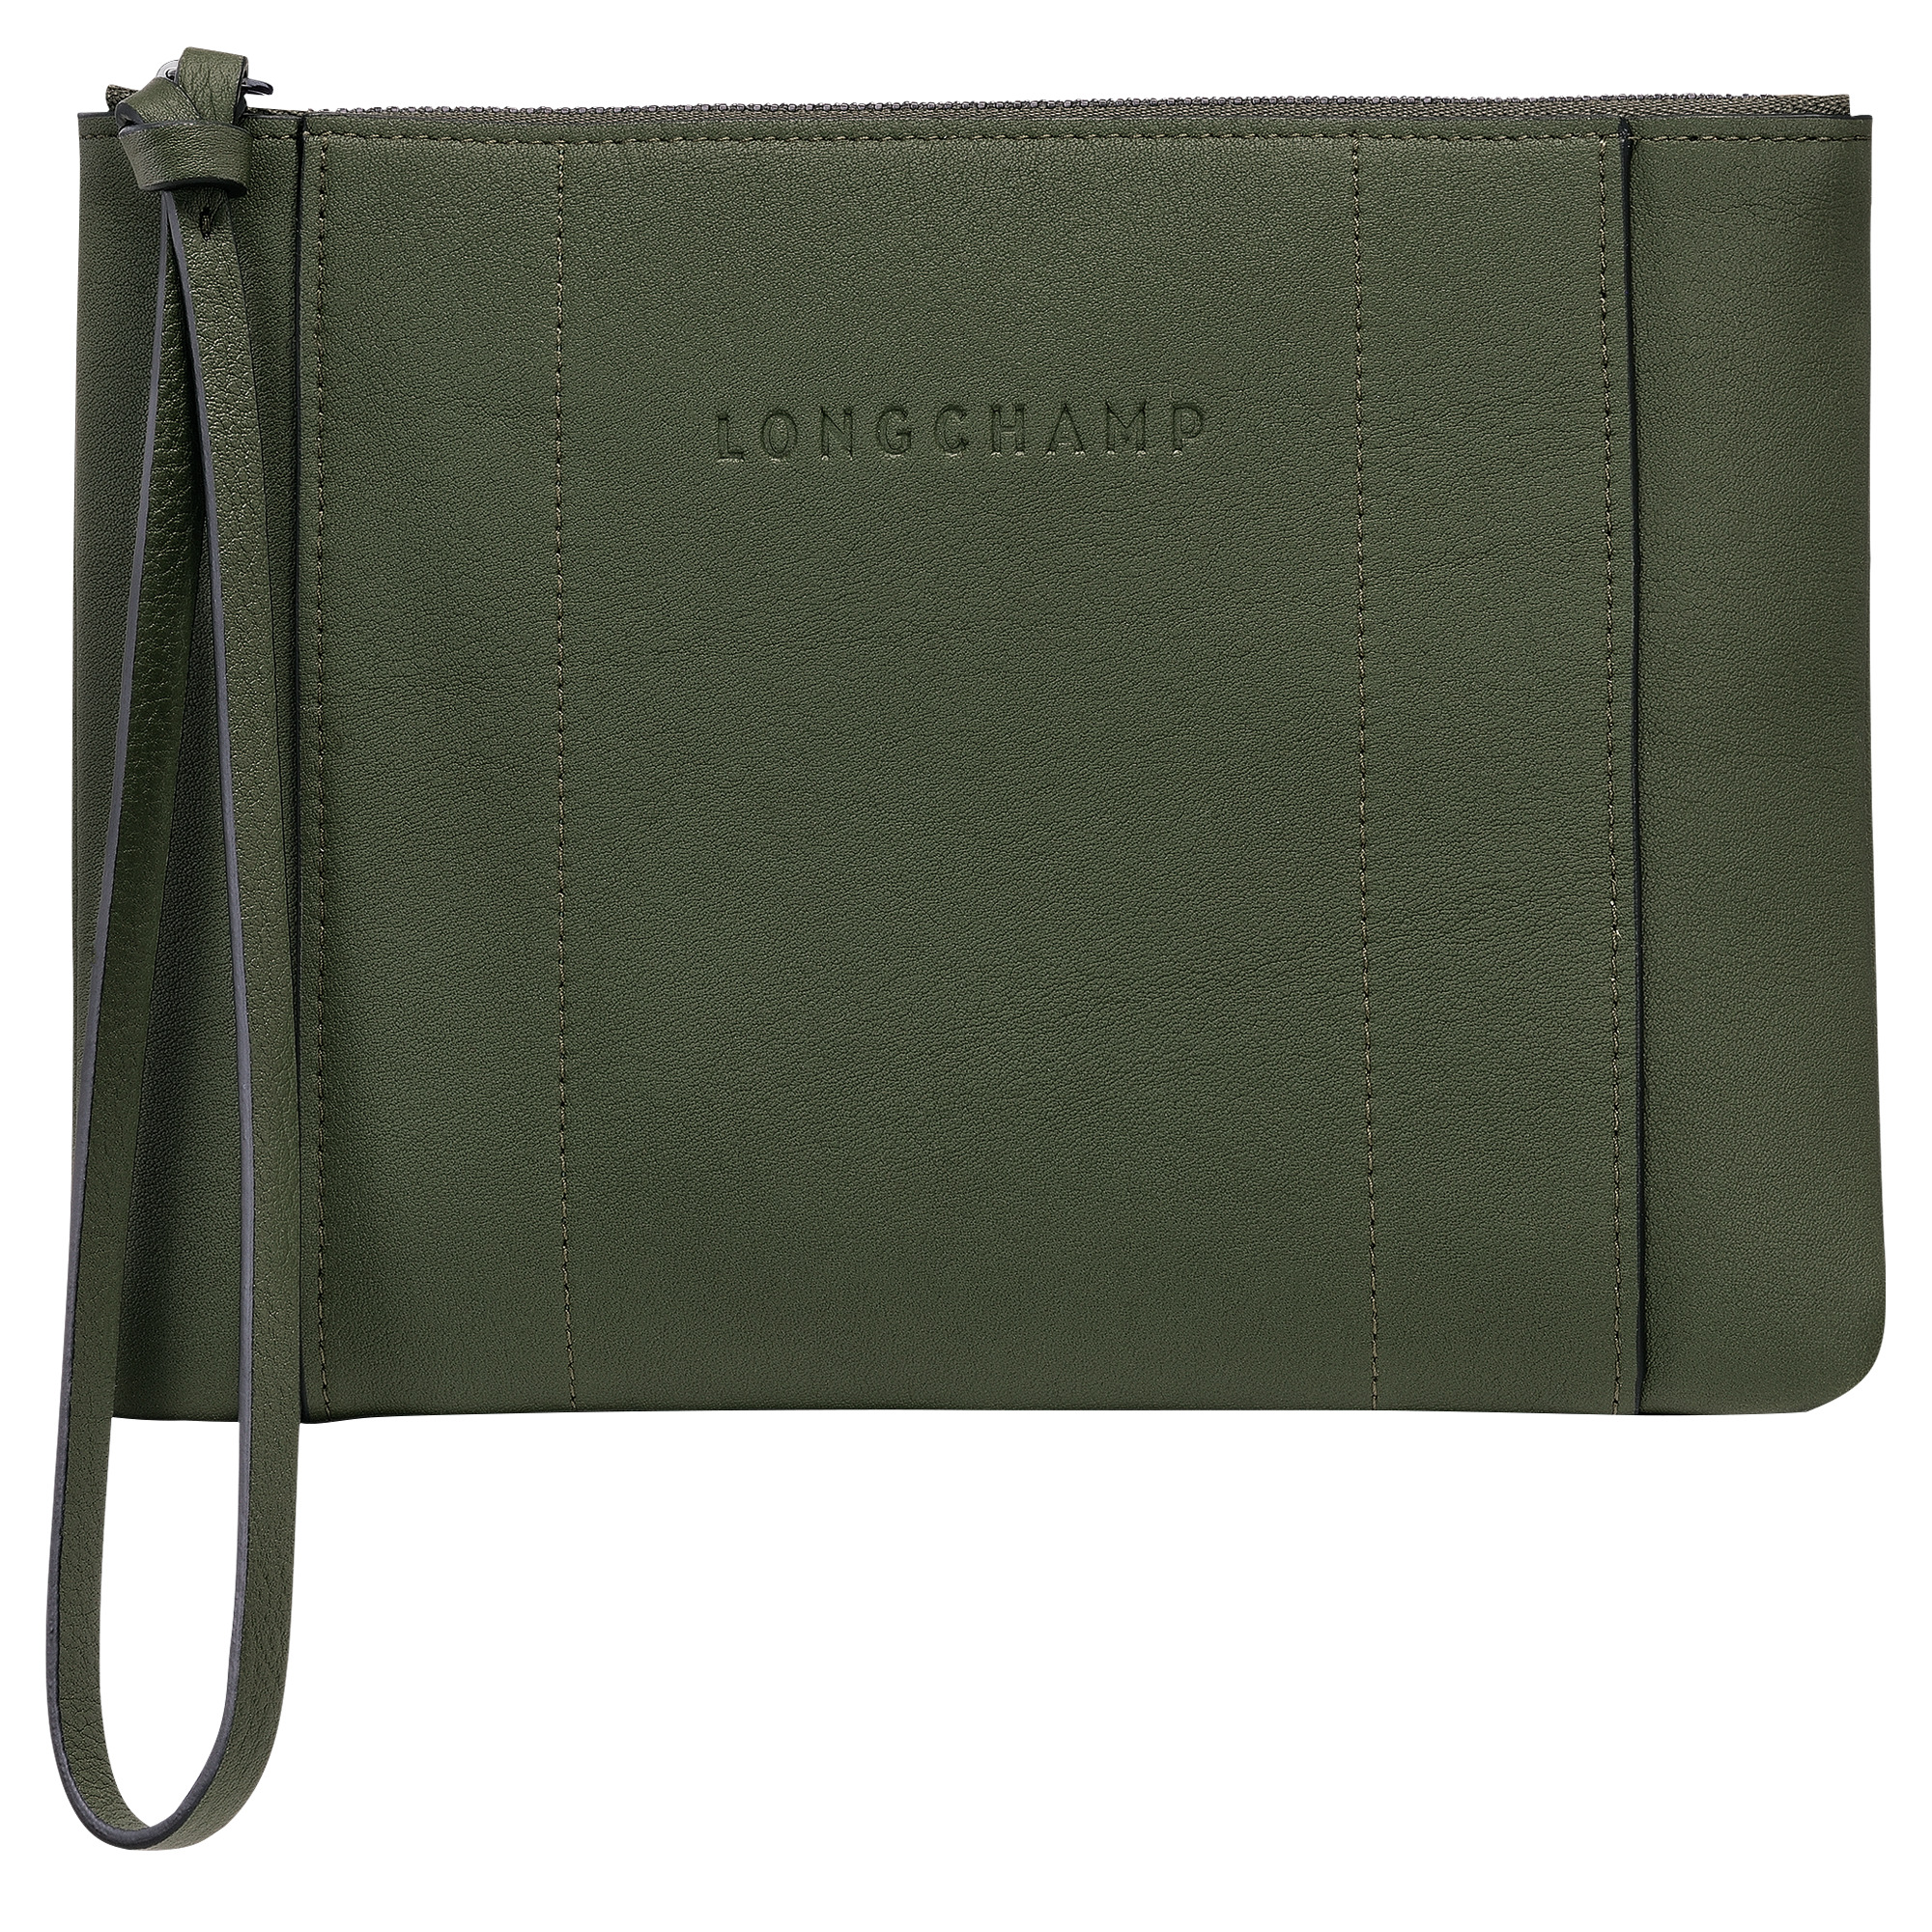 Longchamp 3D Pouch Khaki - Leather - 1